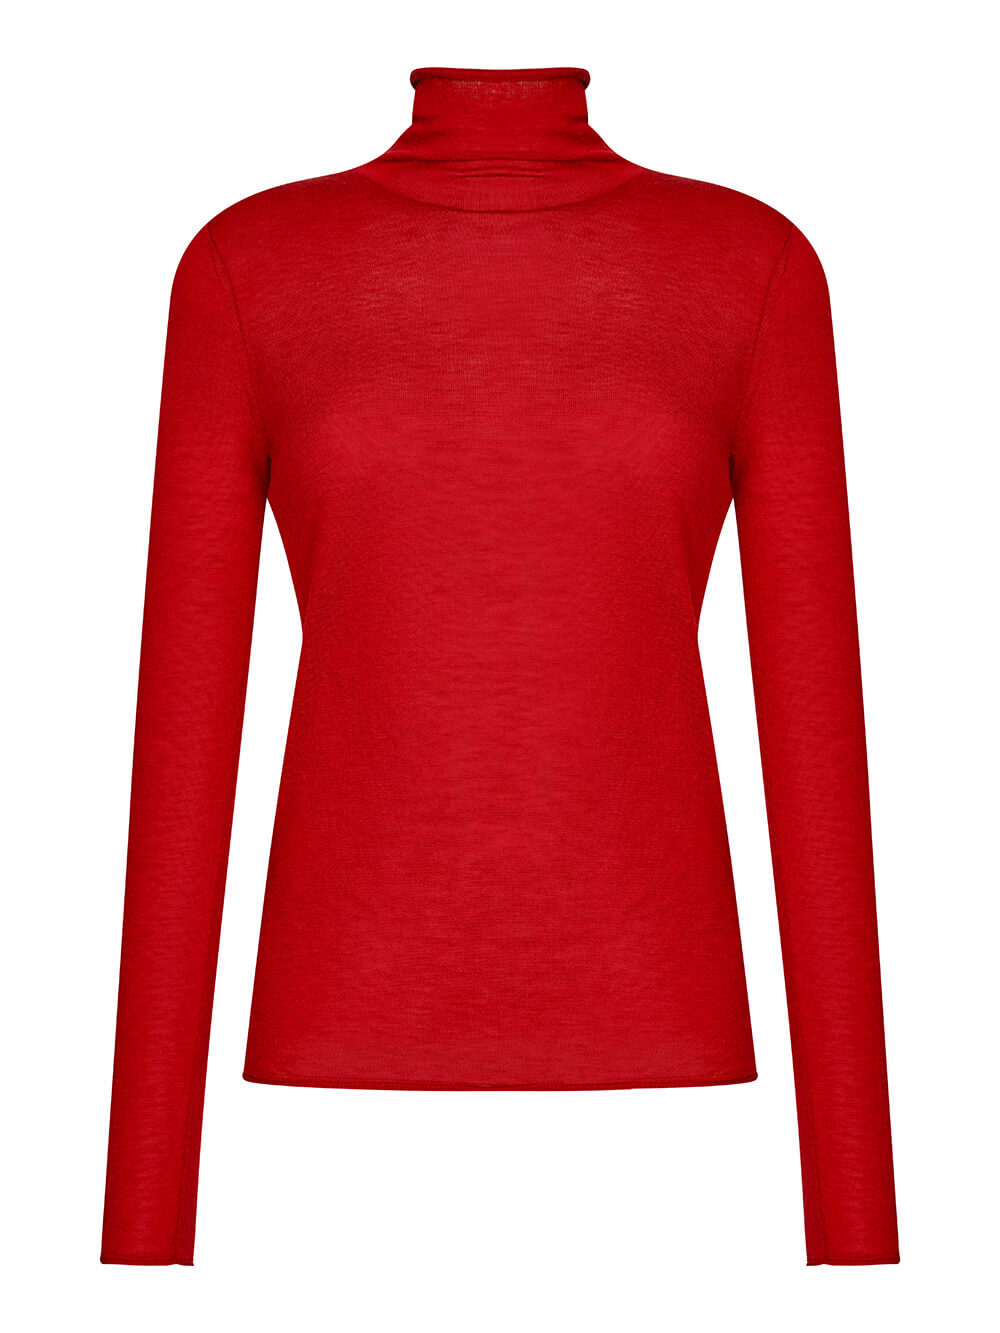 Женский свитер красного цвета из 100% шерсти - фото 1